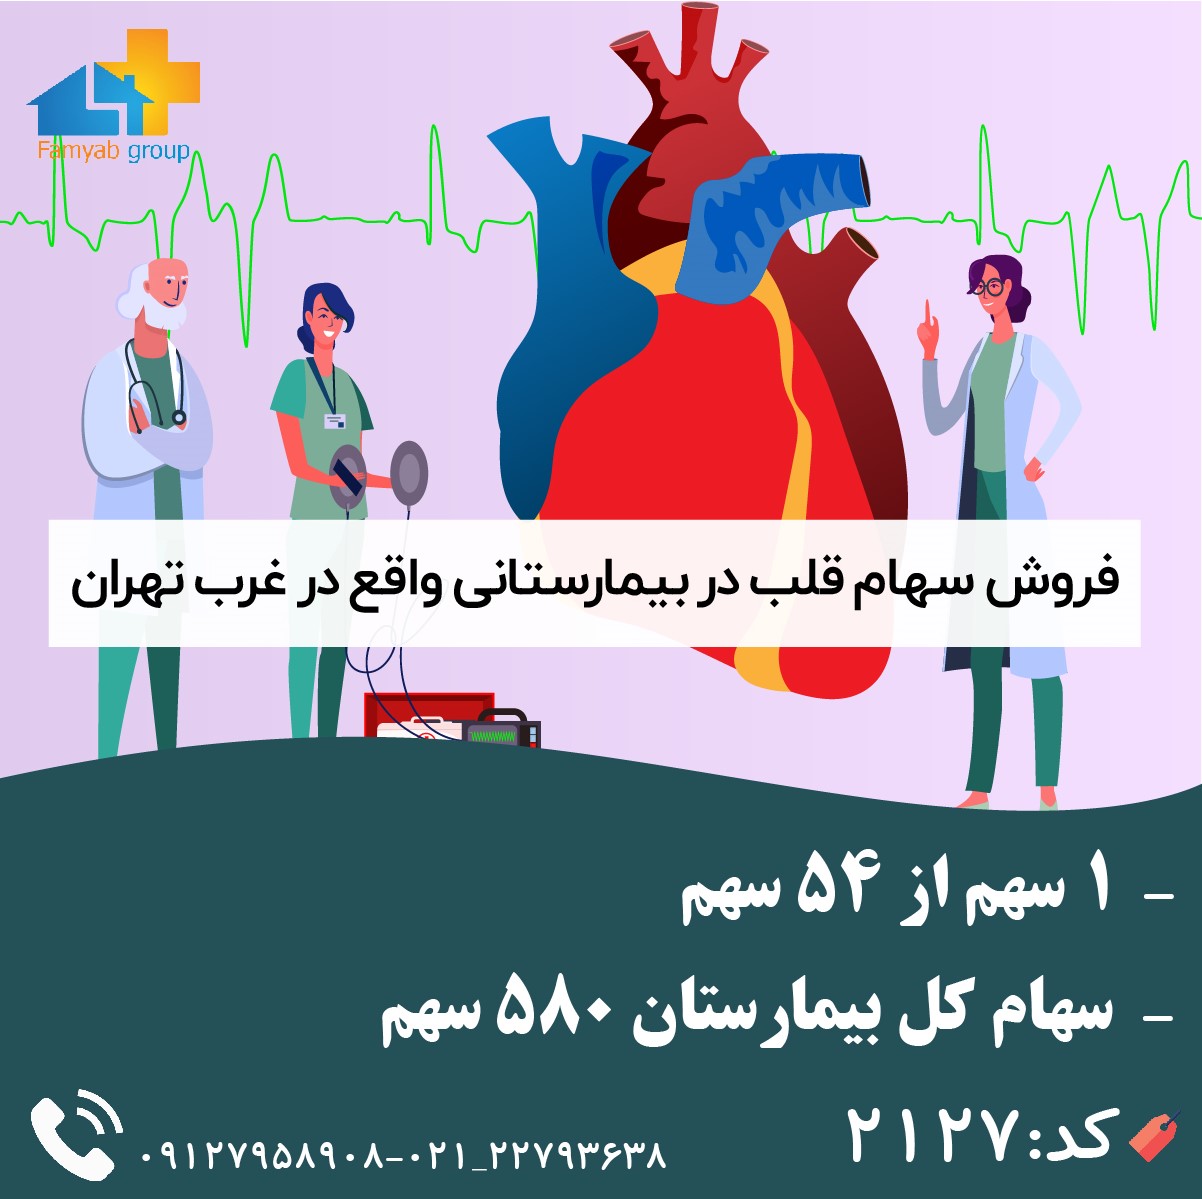 فروش سهام قلب در بیمارستانی واقع در غرب تهران